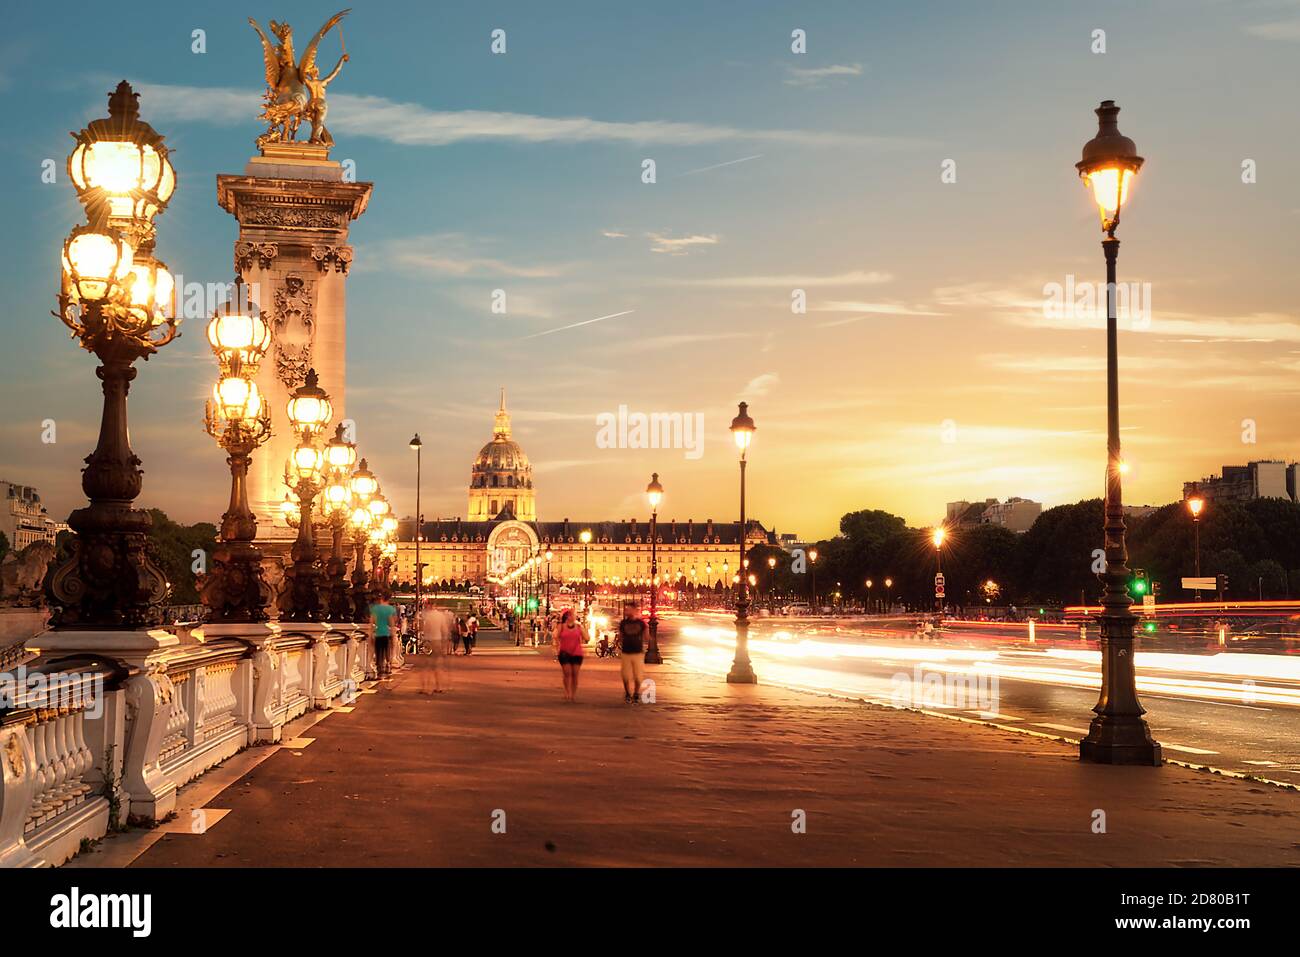 Vue sur les invalides du pont Alexandre III à Paris au coucher du soleil, France Banque D'Images